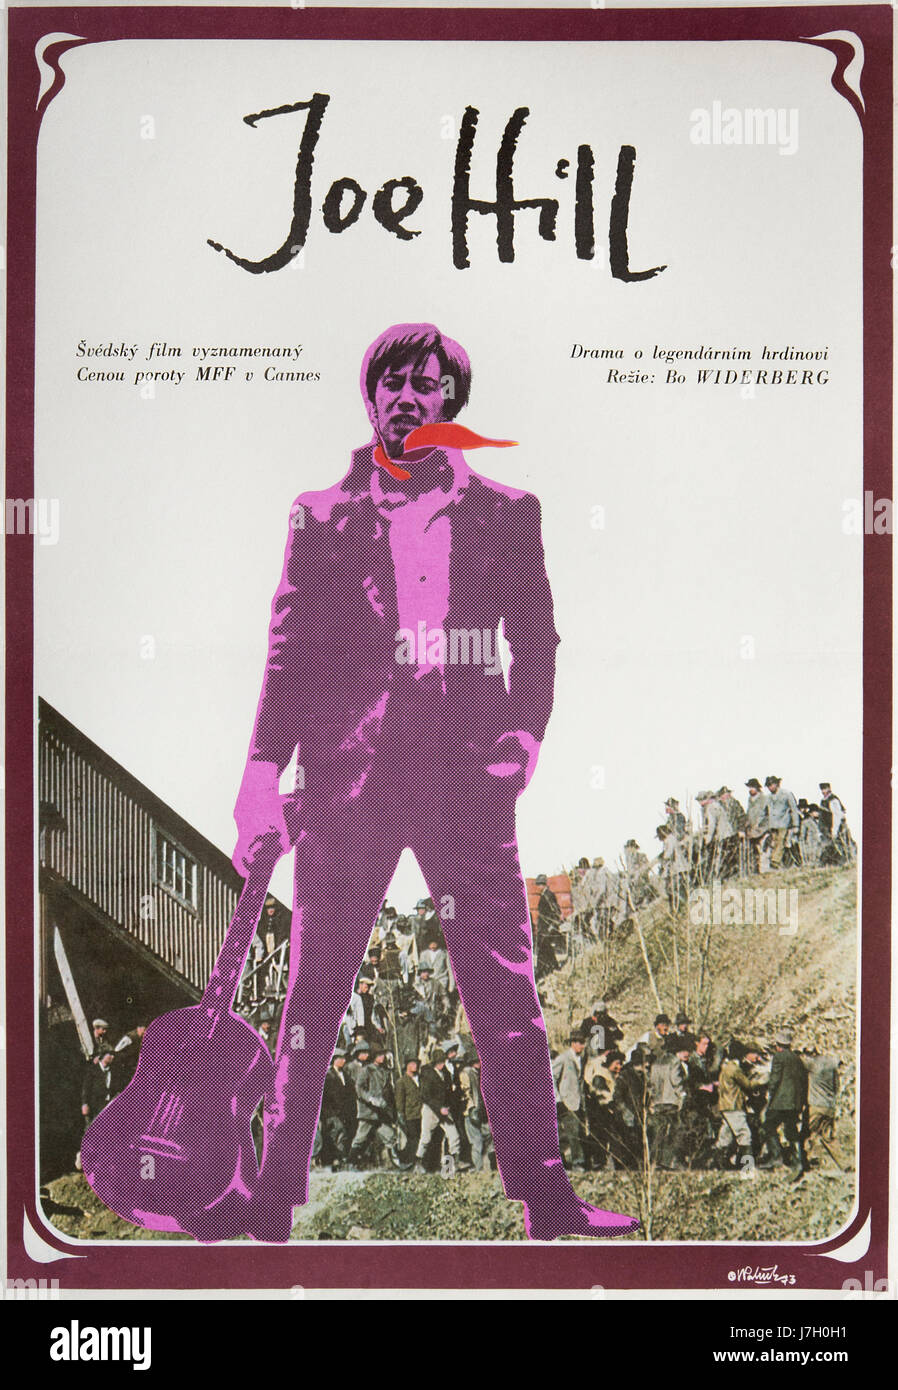 Joe Hill. Movie poster for swedish film from 1971. Director: Bo Widerberg . Actor: Thommy Berggren. Art: Vladimir Palecek Stock Photo